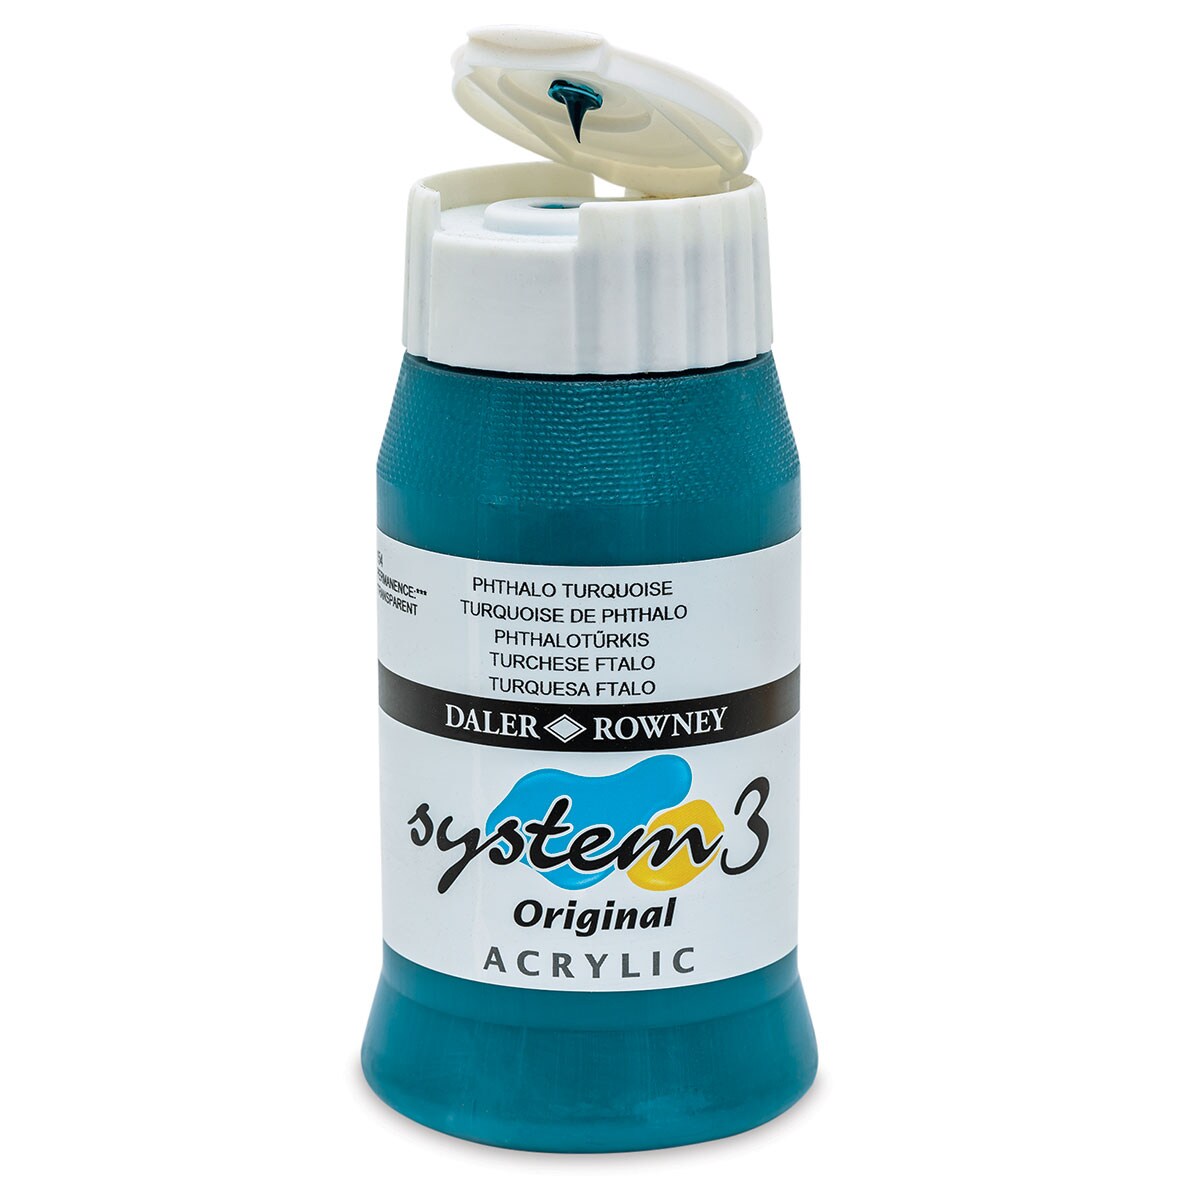 Daler-Rowney System3 Acrylic - Phthalo Turquoise, 500 ml bottle